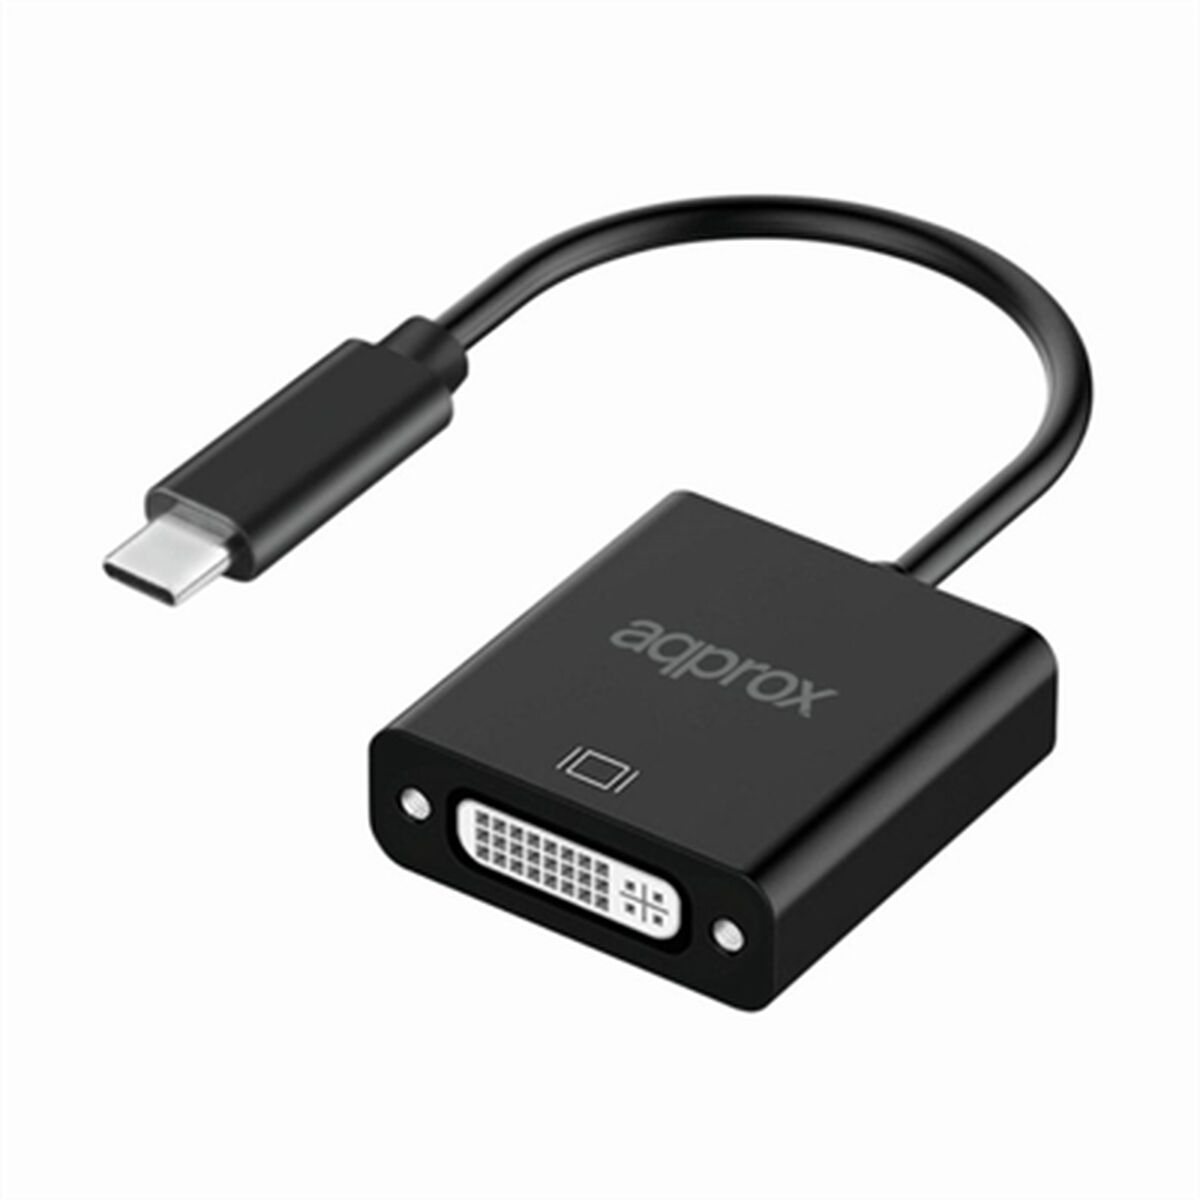 Osta tuote USB C – DVI Adapteri approx! APPC51 Musta verkkokaupastamme Korhone: Urheilu & Vapaa-aika 20% alennuksella koodilla VIIKONLOPPU